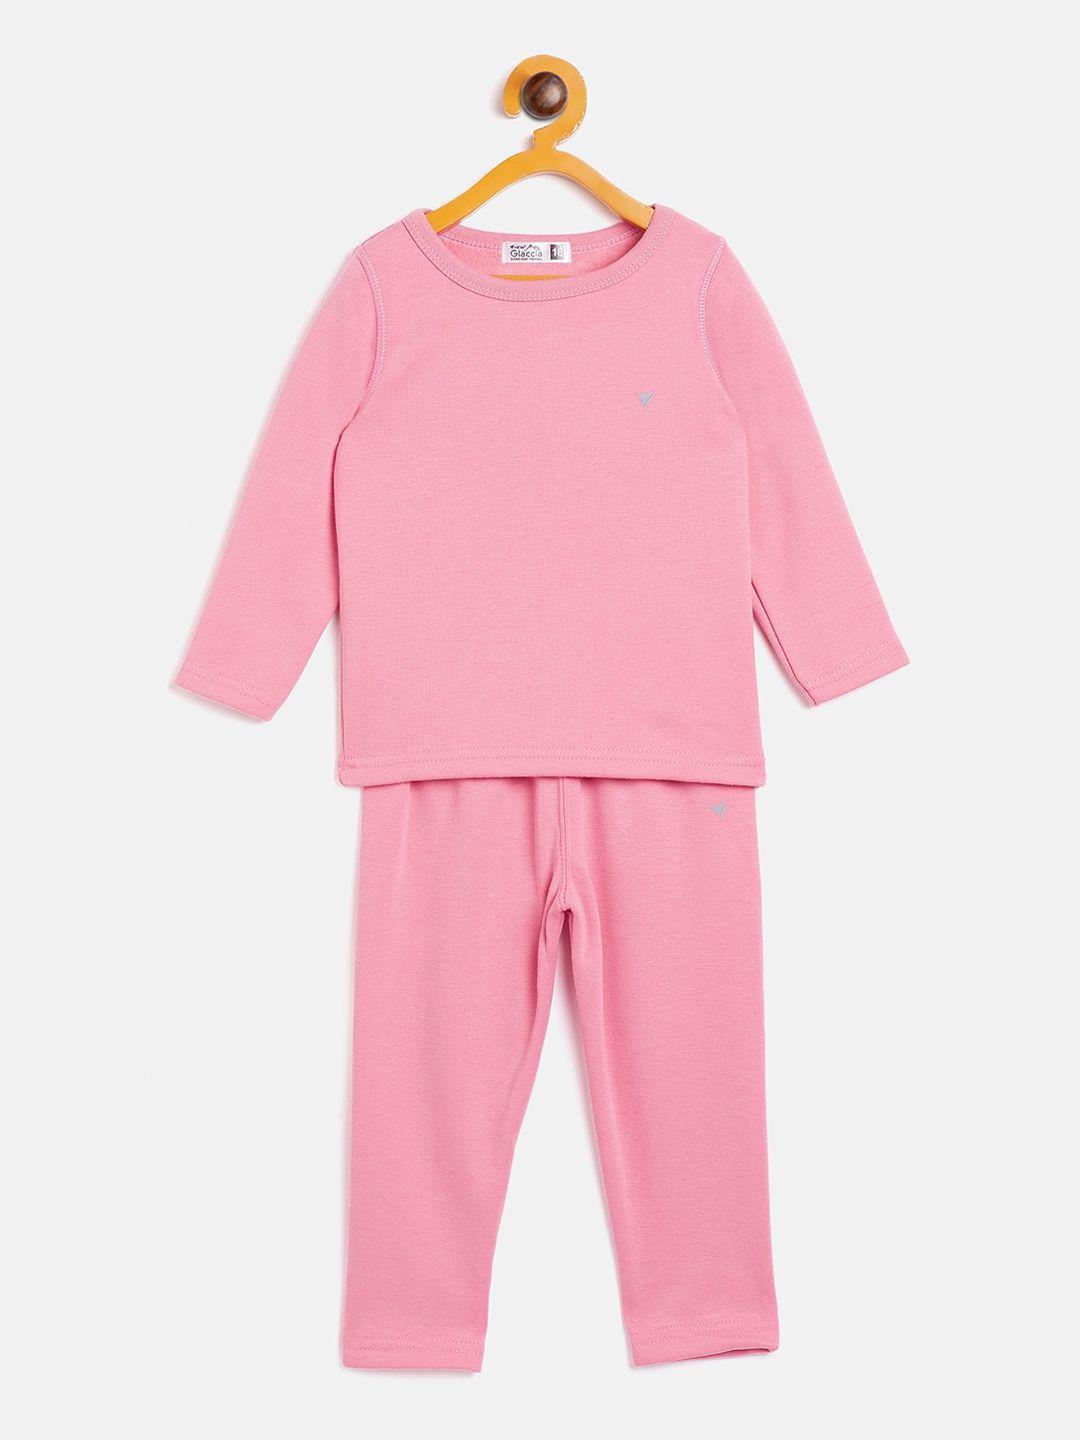 neva-infant-boys-pink-solid-skin-fit-thermal-set